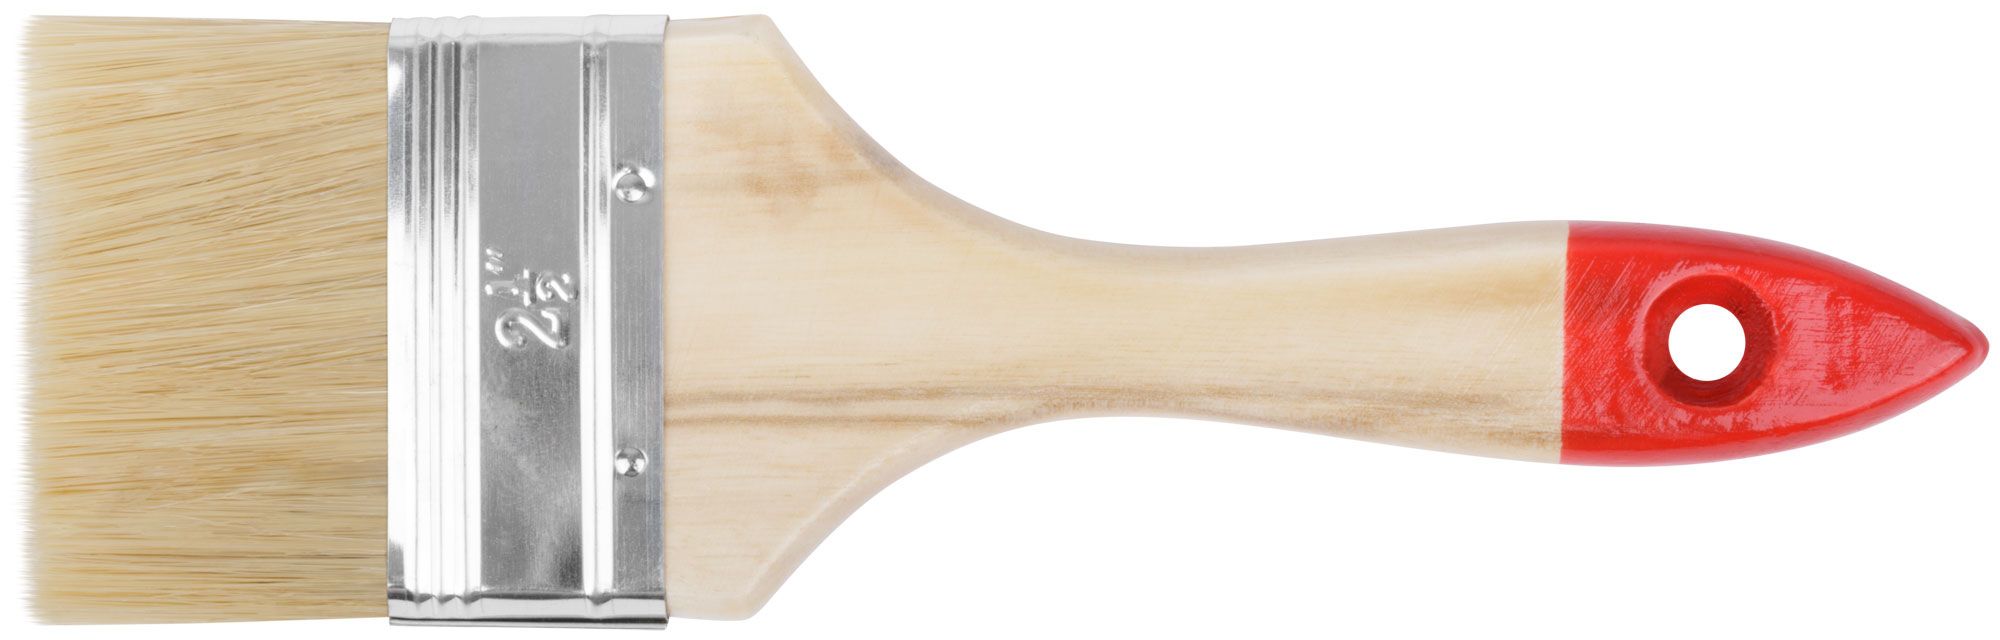 Кисть флейцевая "Стандарт", натур.светлая щетина, деревянная ручка 2,5" (63 мм) F01036 FIT от магазина Tehnorama